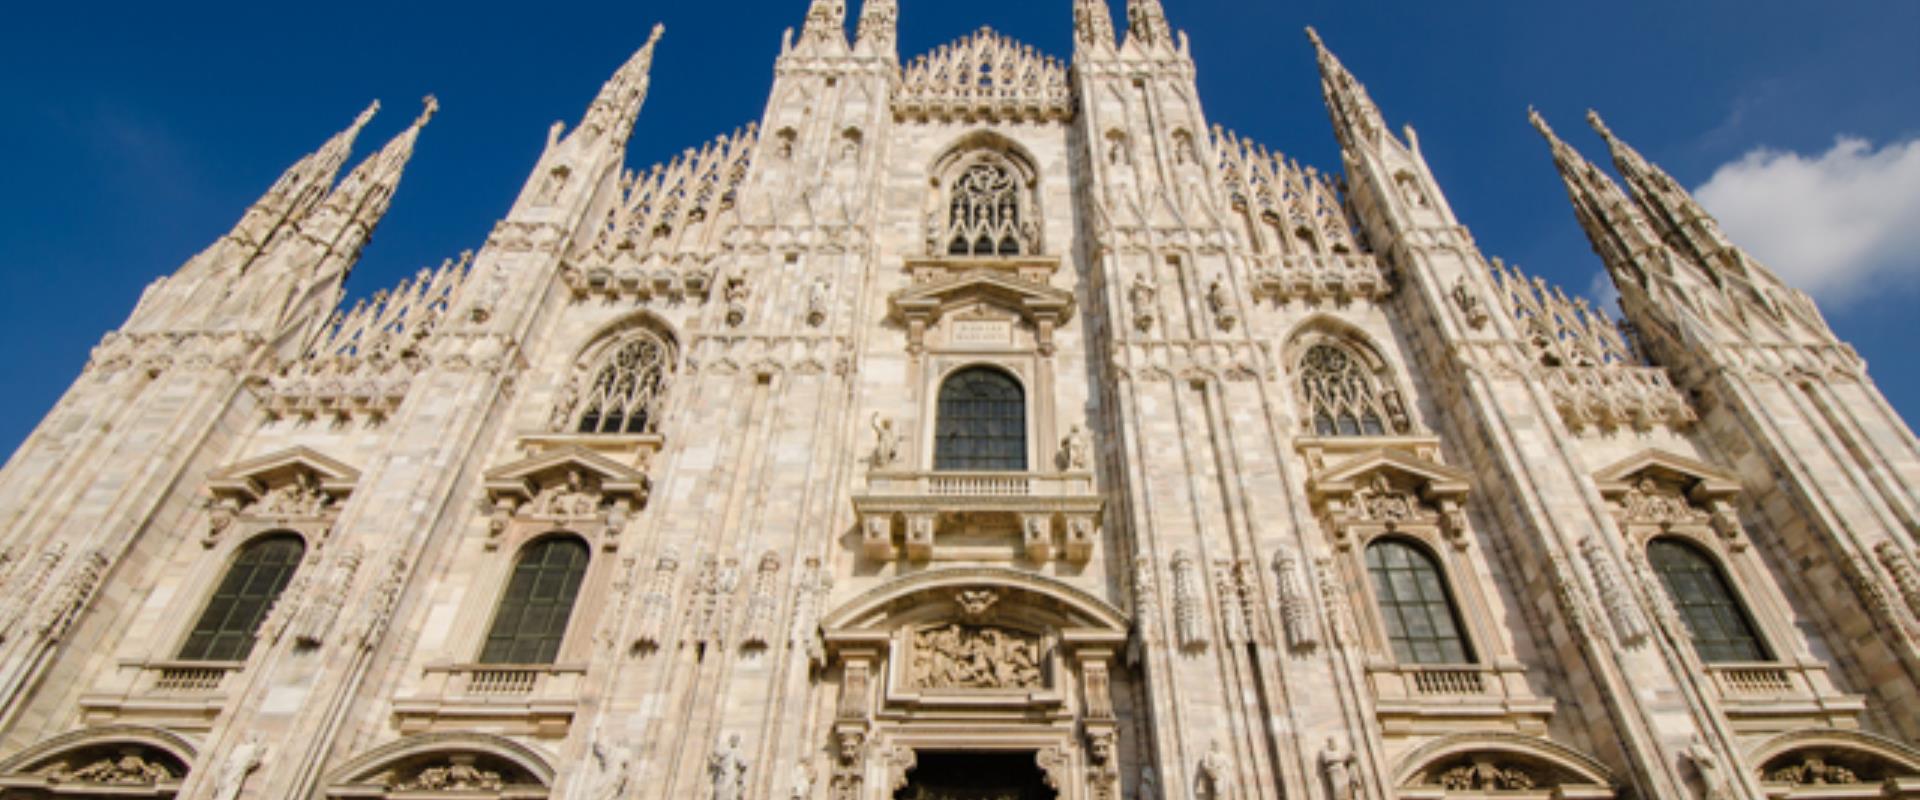 Il Duomo di Milano, vicino alla Galleria Vittorio Emanuele e al Teatro alla Scala